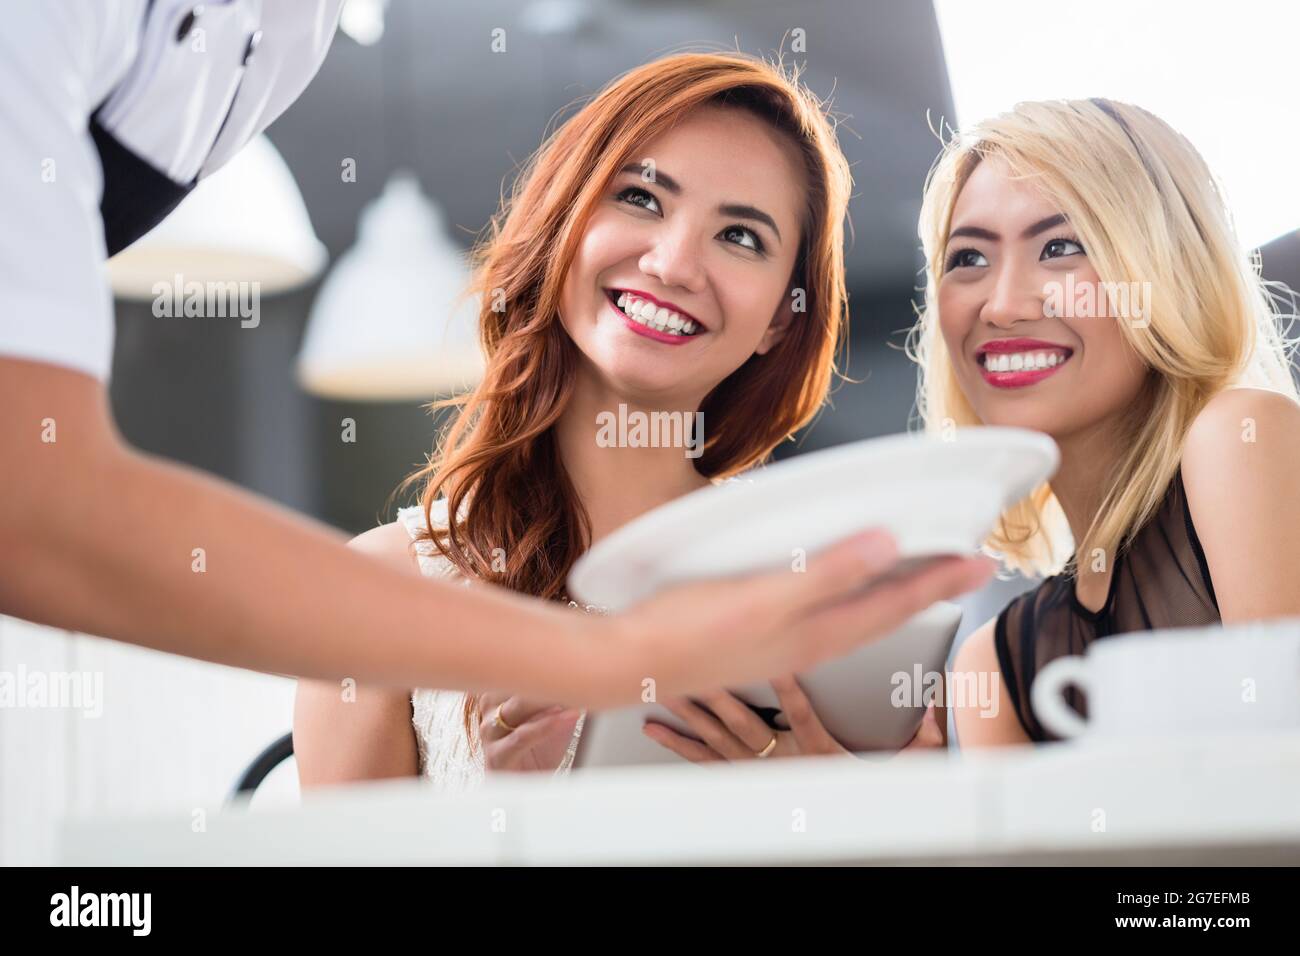 Deux belles femmes asiatiques souriantes servies dans un restaurant avec une assiette de nourriture, sous angle au-delà de la main des serveurs avec un accent sur leurs visages Banque D'Images